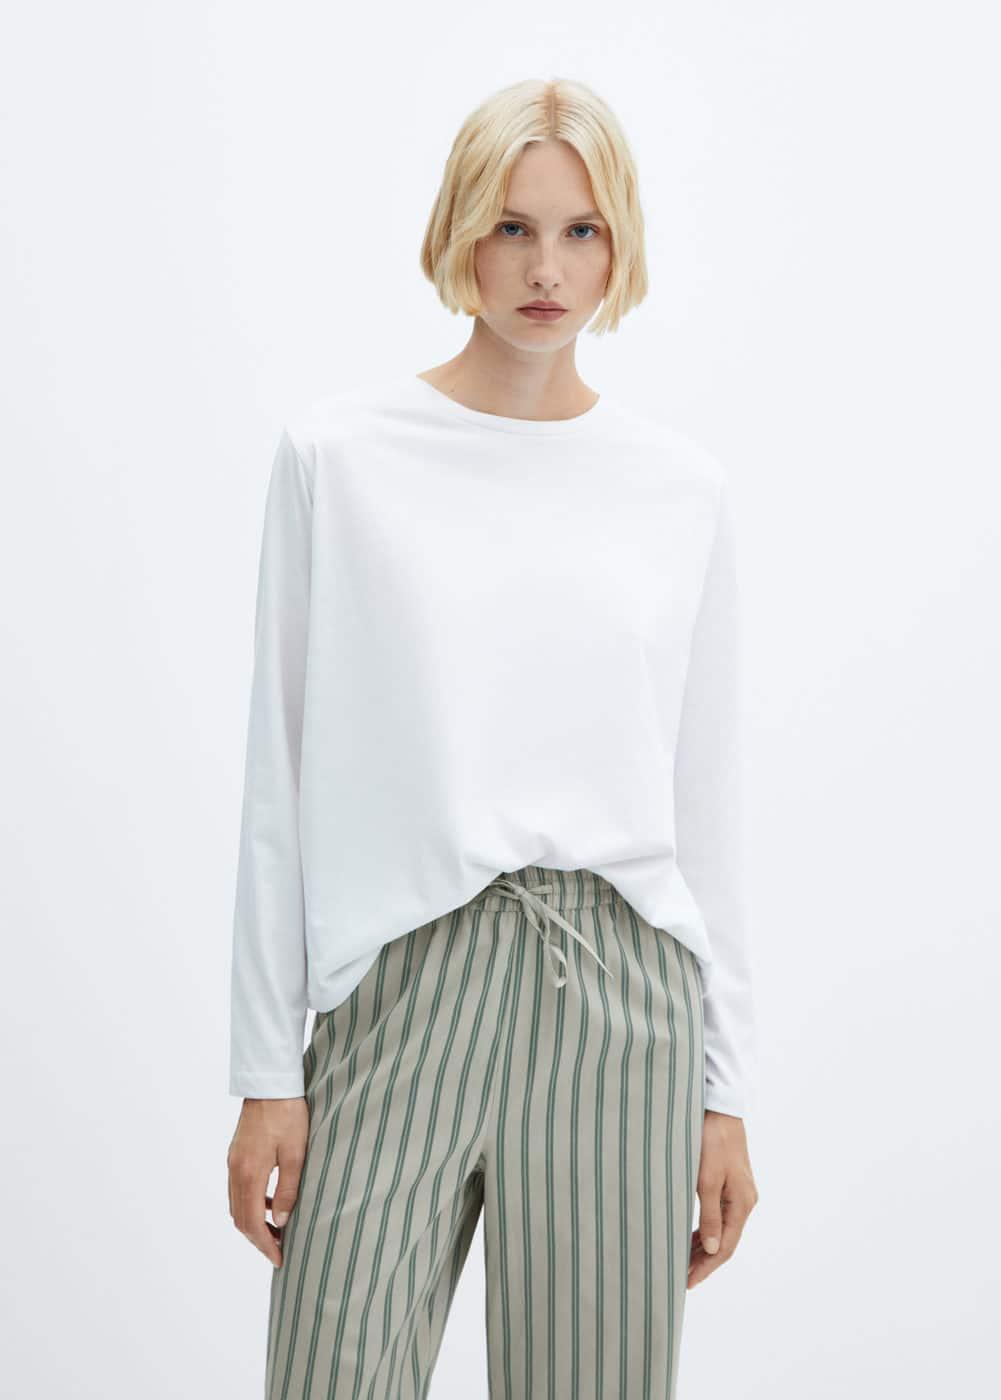 MANGO Stripe Cotton Pajamas Product Image